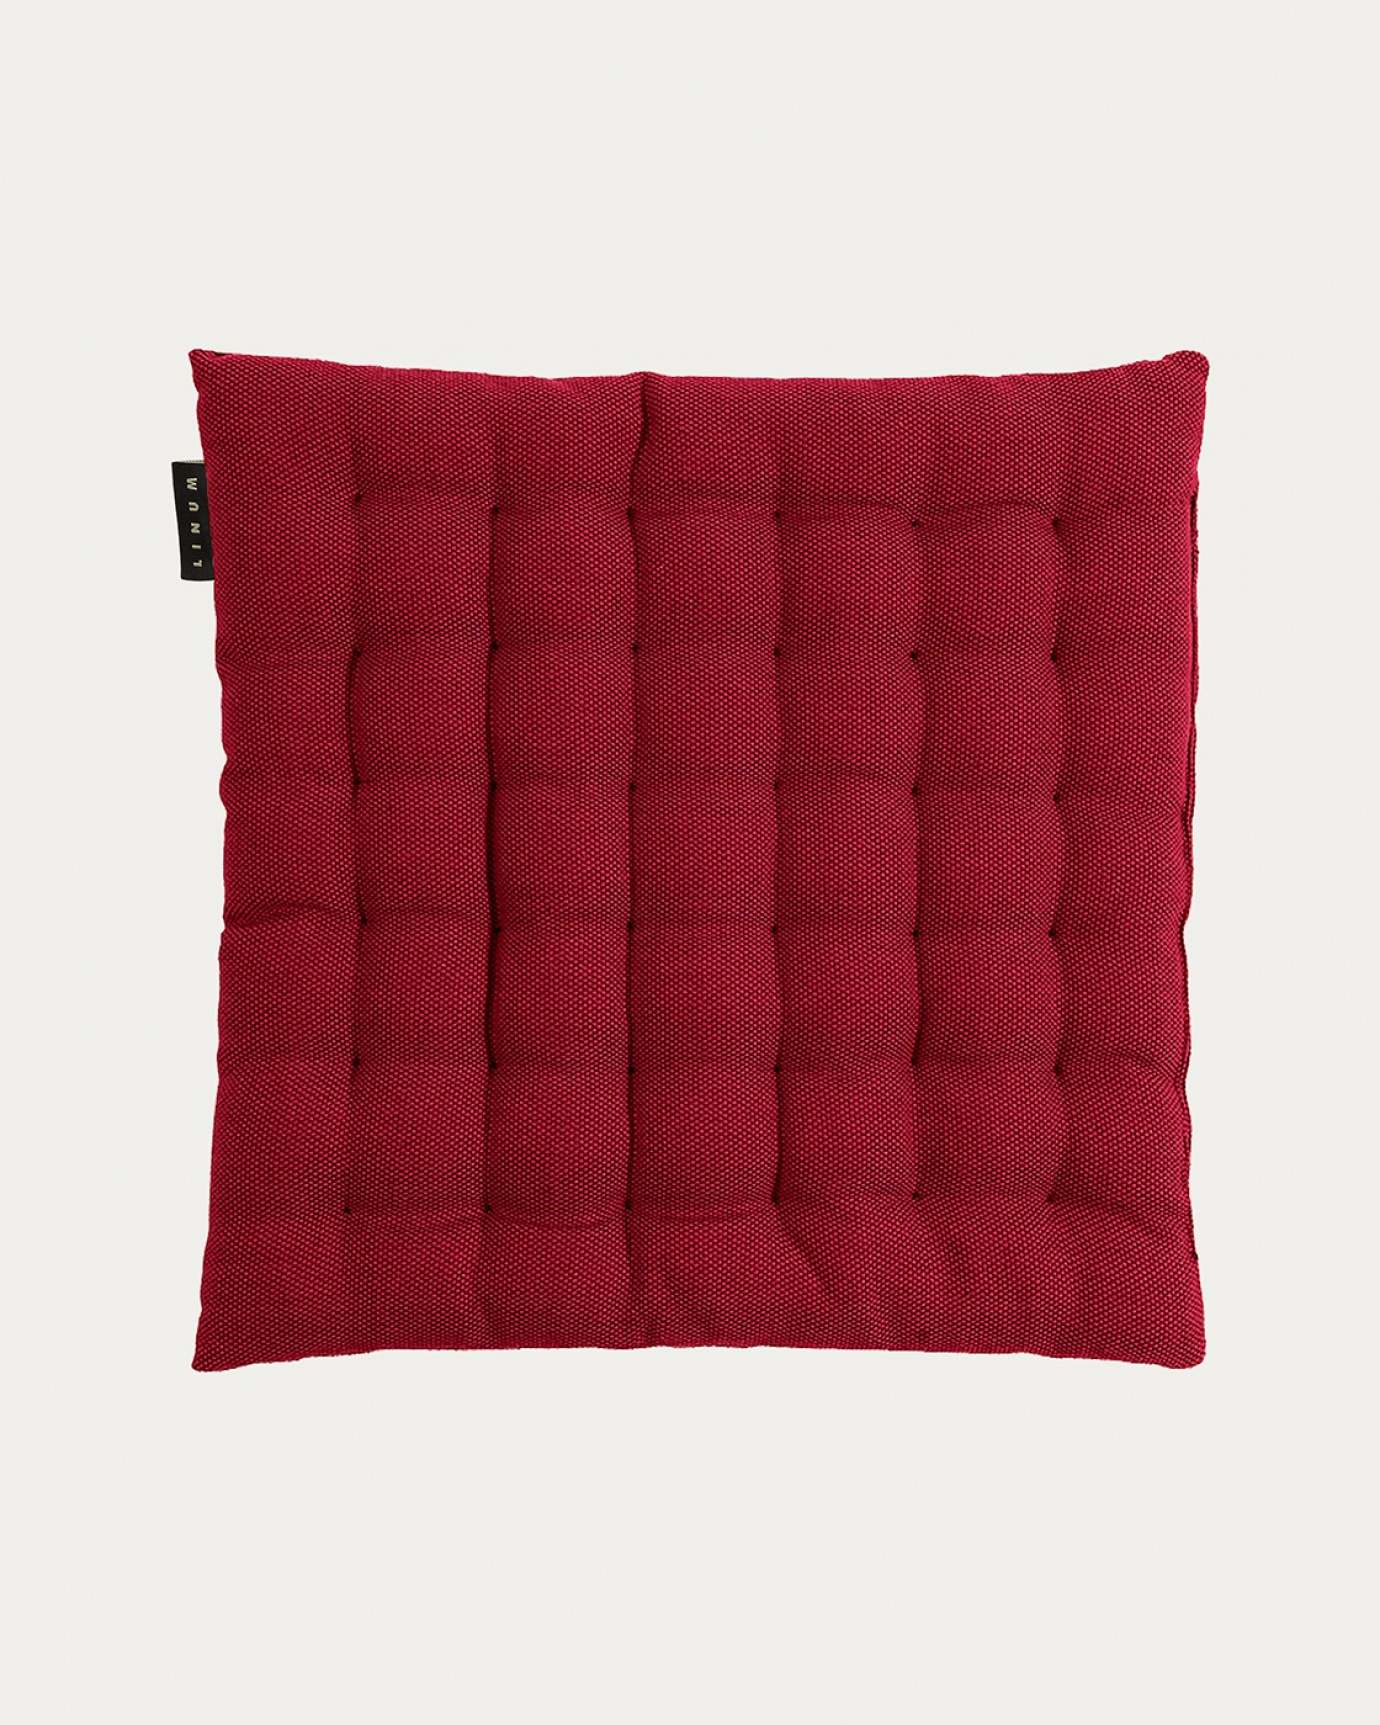 Immagine prodotto rosso PEPPER cuscini sedie di cotone con imbottitura in poliestere di LINUM DESIGN. Dimensioni 40x40 cm.